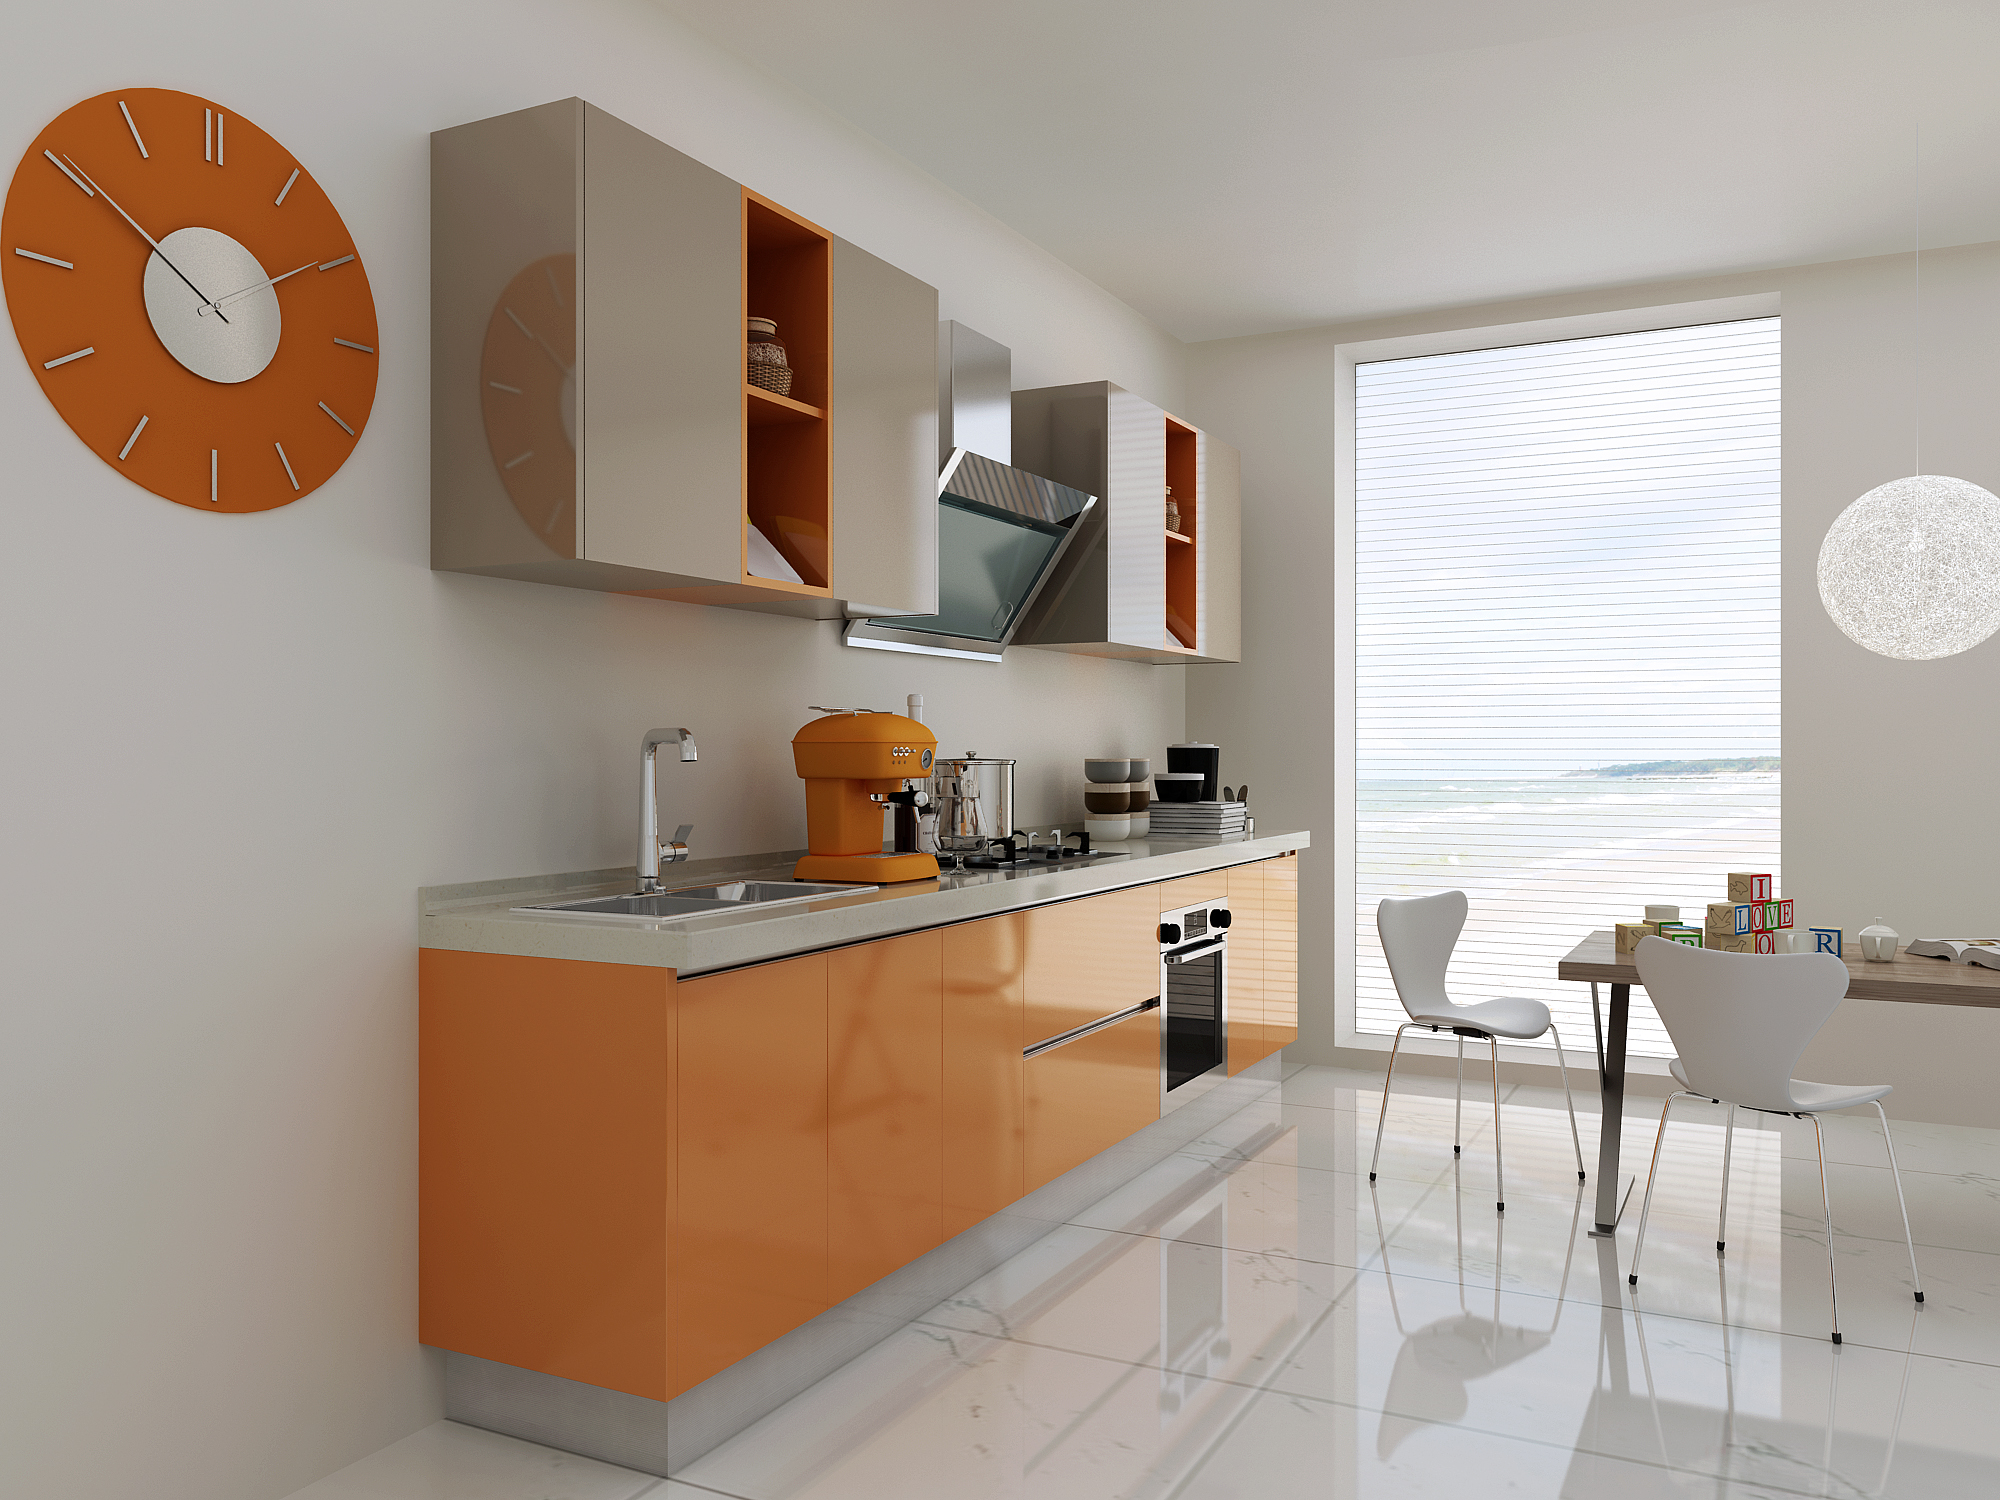 开放式厨房装修效果图5种现代风格供您选择